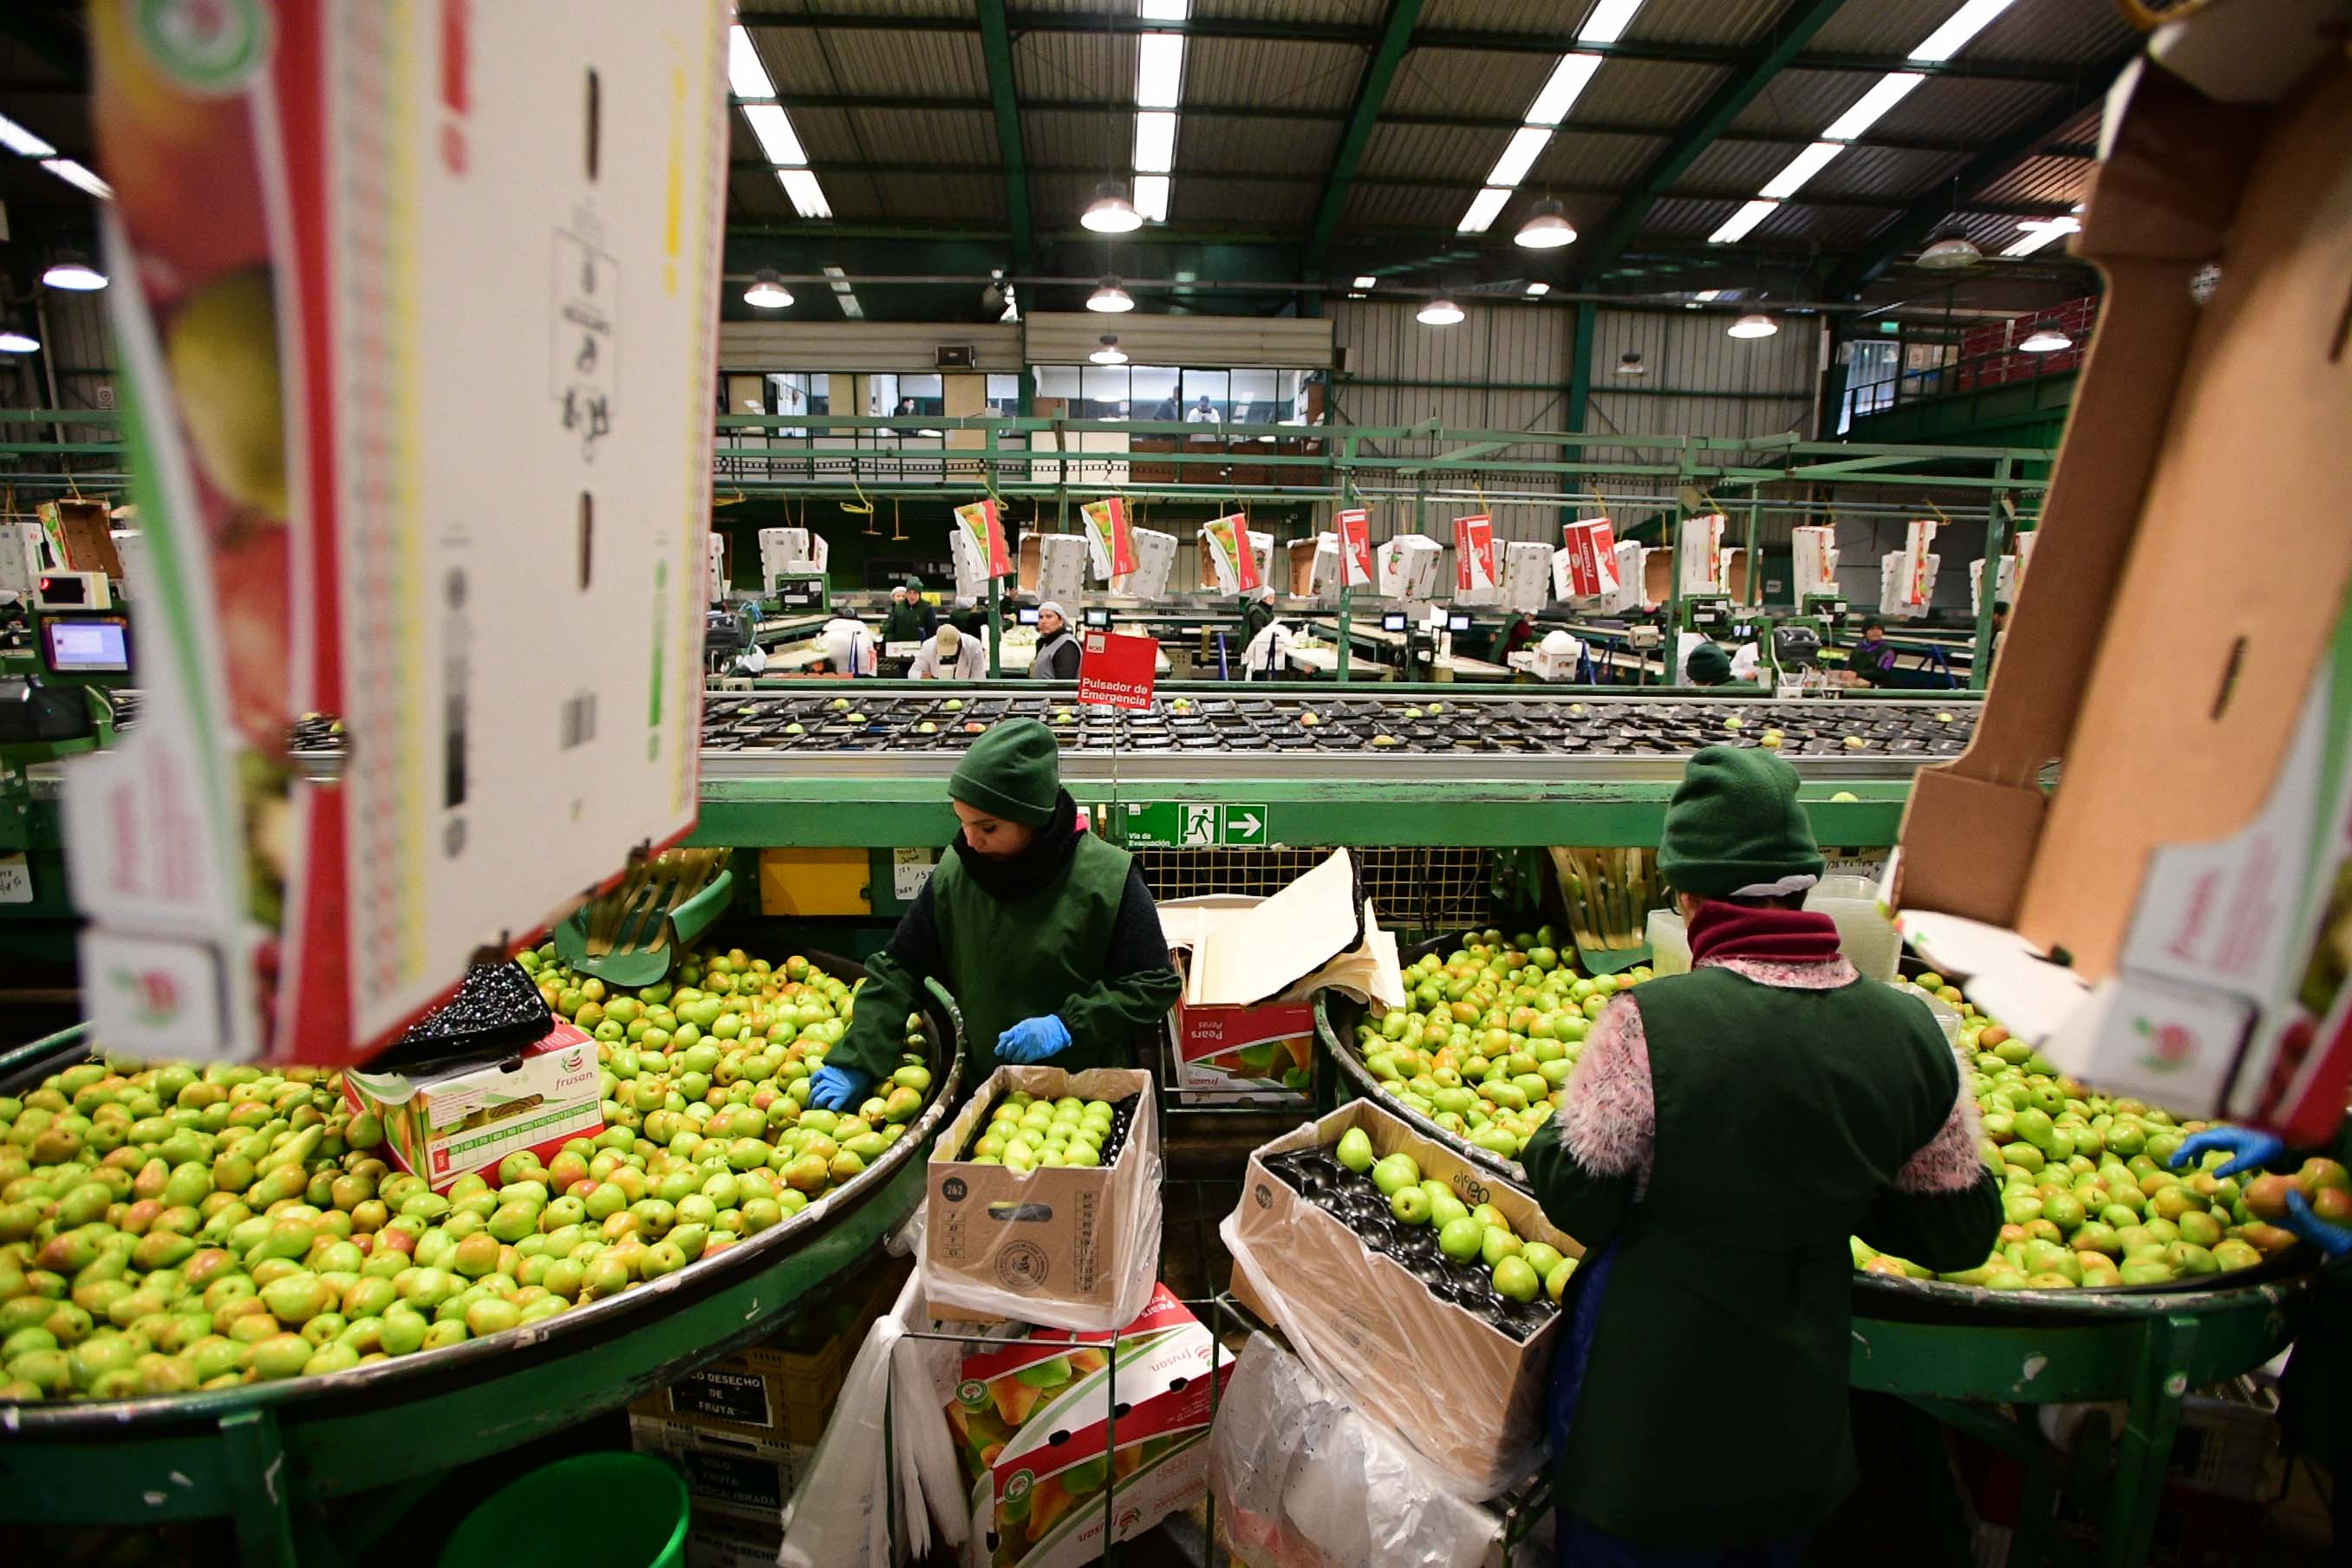 6月14日,在智利中部奥希金斯大区的圣费尔南多水果加工厂,工人在包装